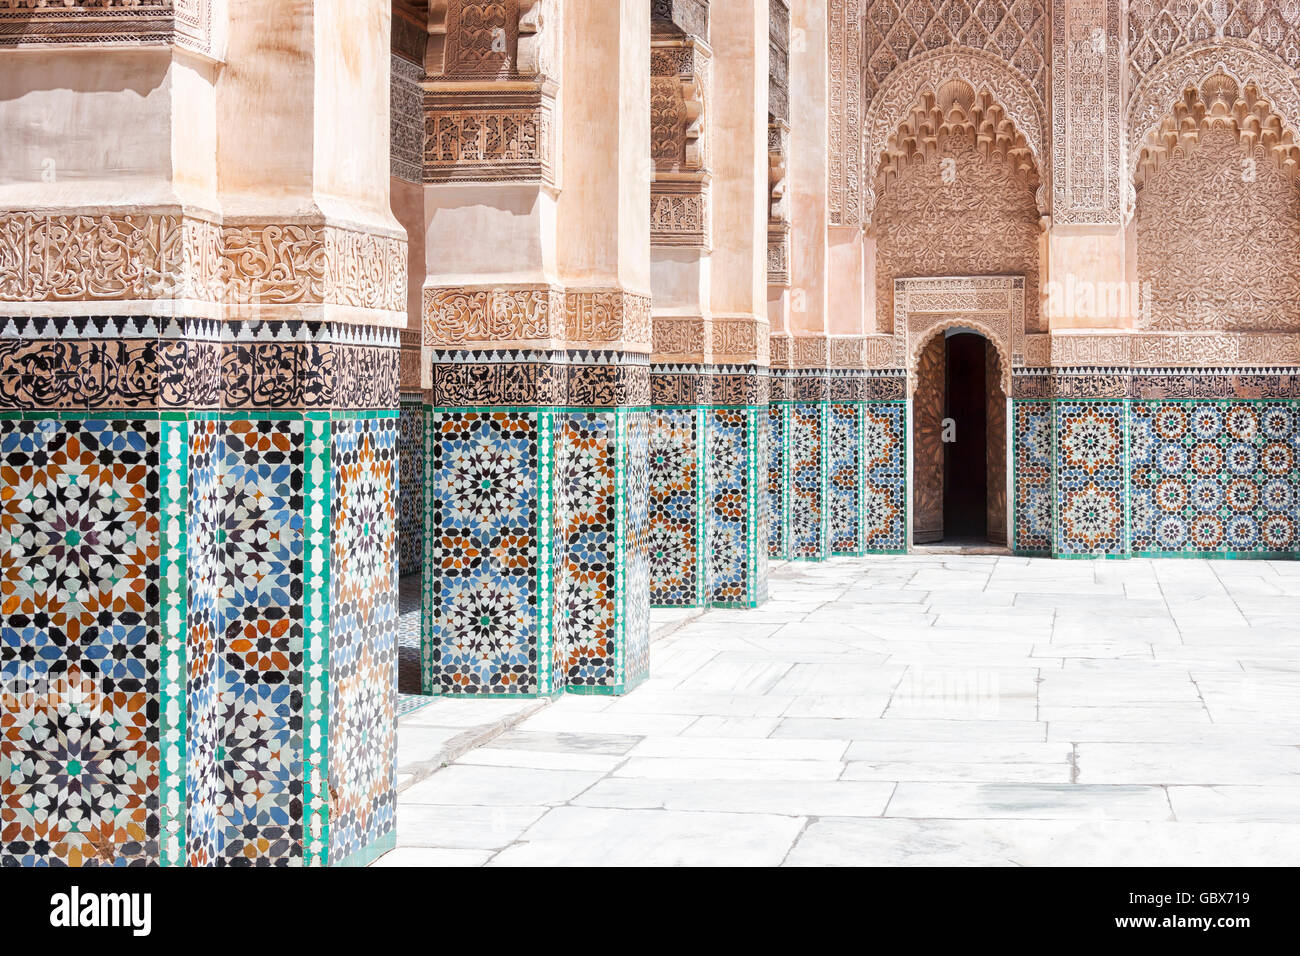 Schöne handwerkliche Arbeiten in der Koran-Schule Medersa Ben Youssef in Marrakesch, Marokko. Stockfoto